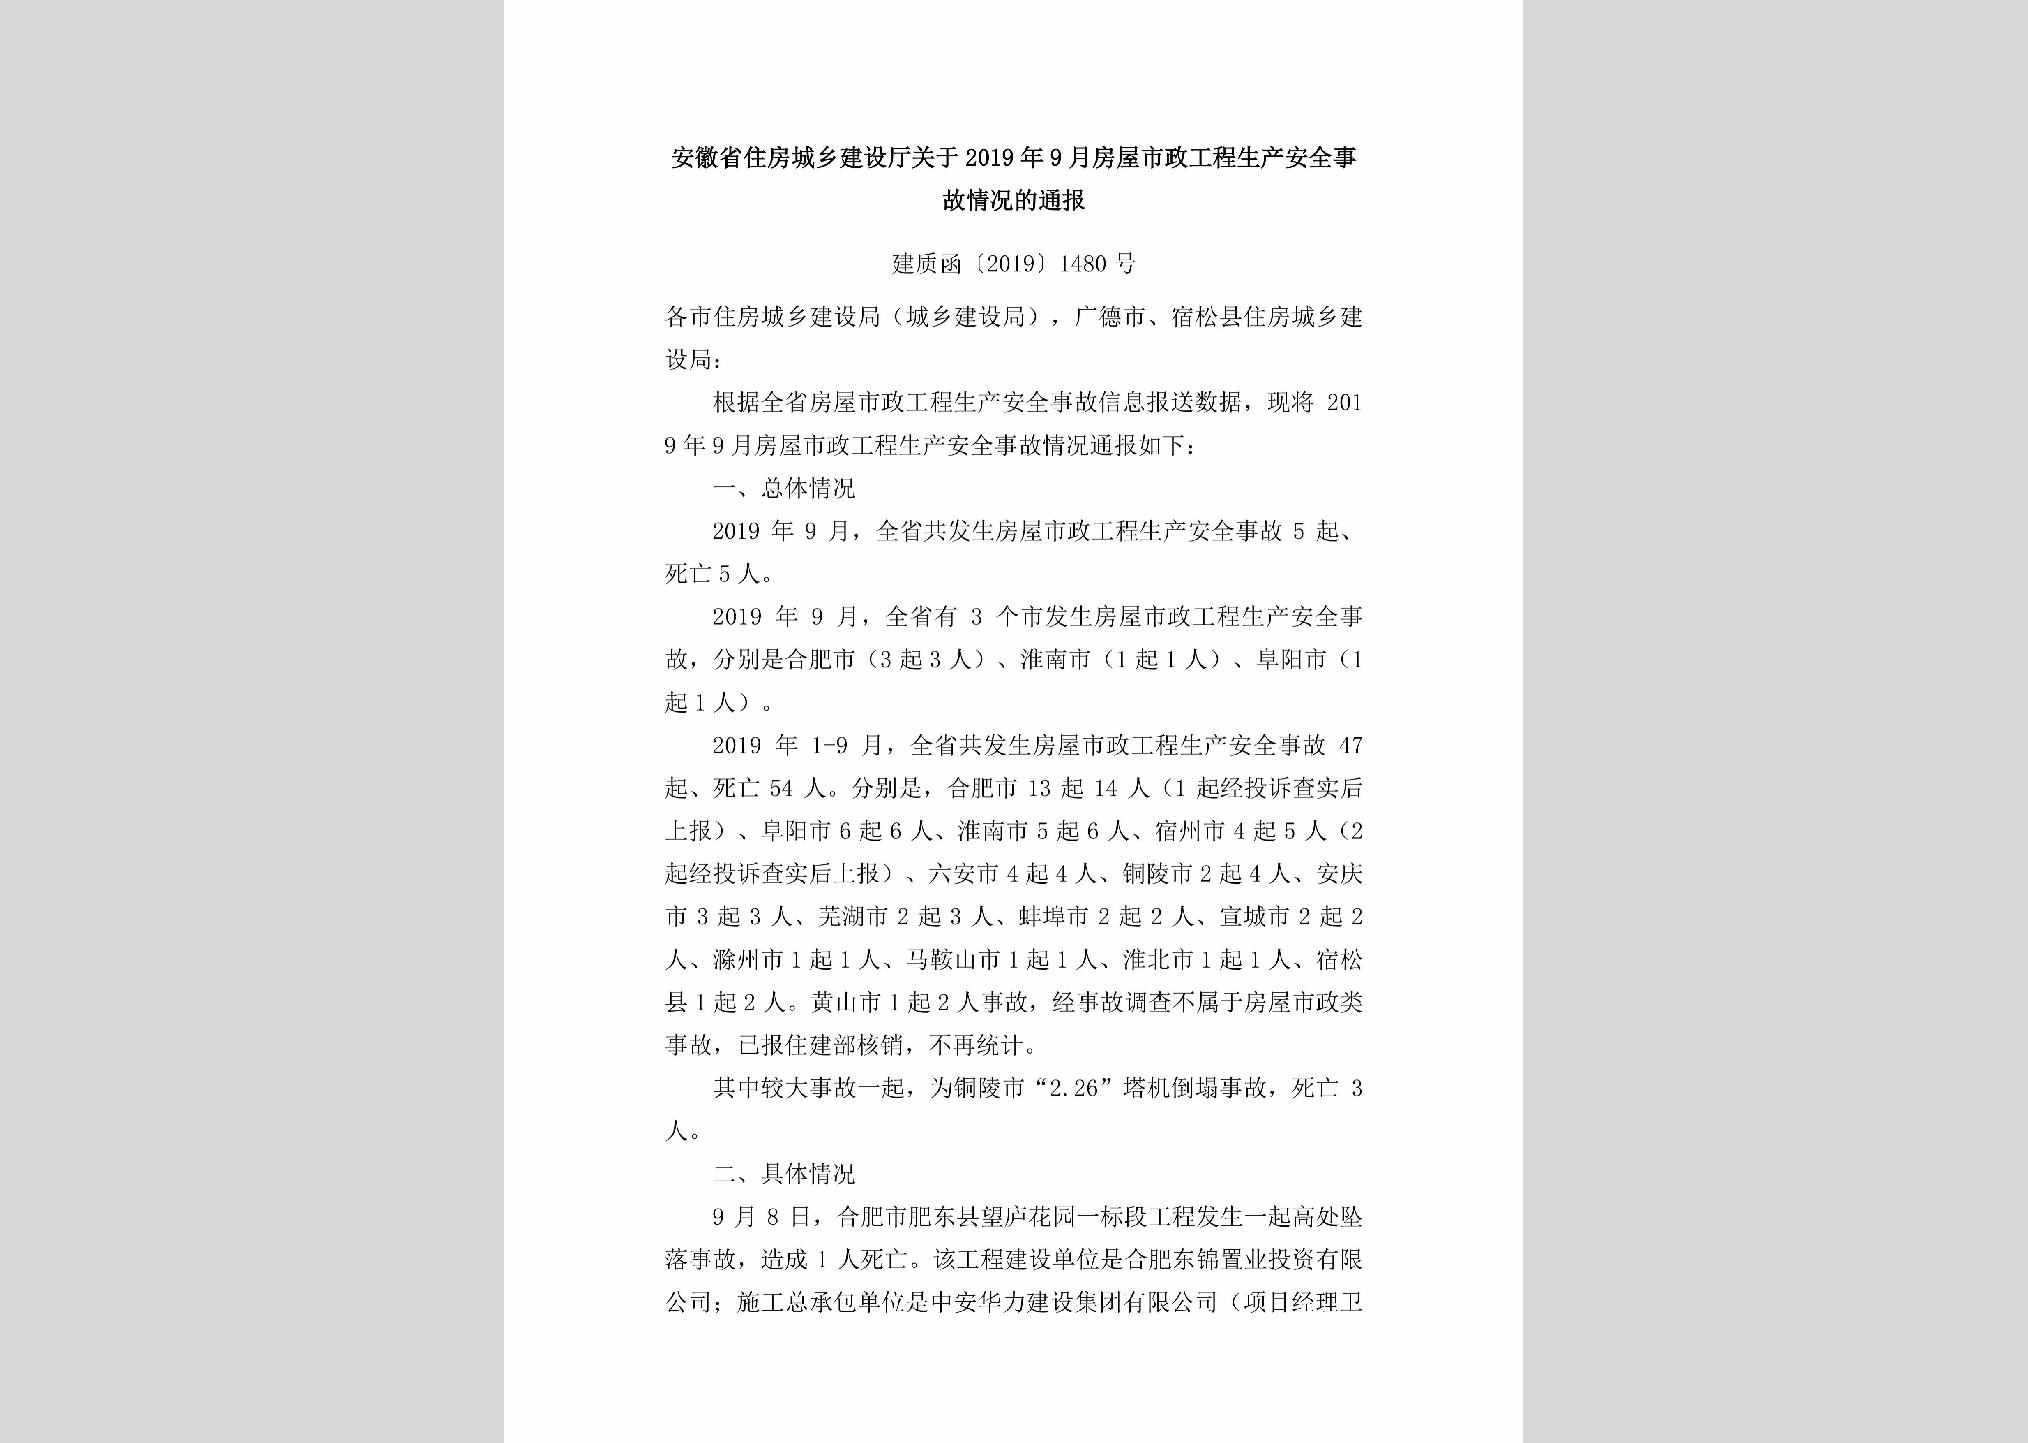 建质函[2019]1480号：安徽省住房城乡建设厅关于2019年9月房屋市政工程生产安全事故情况的通报